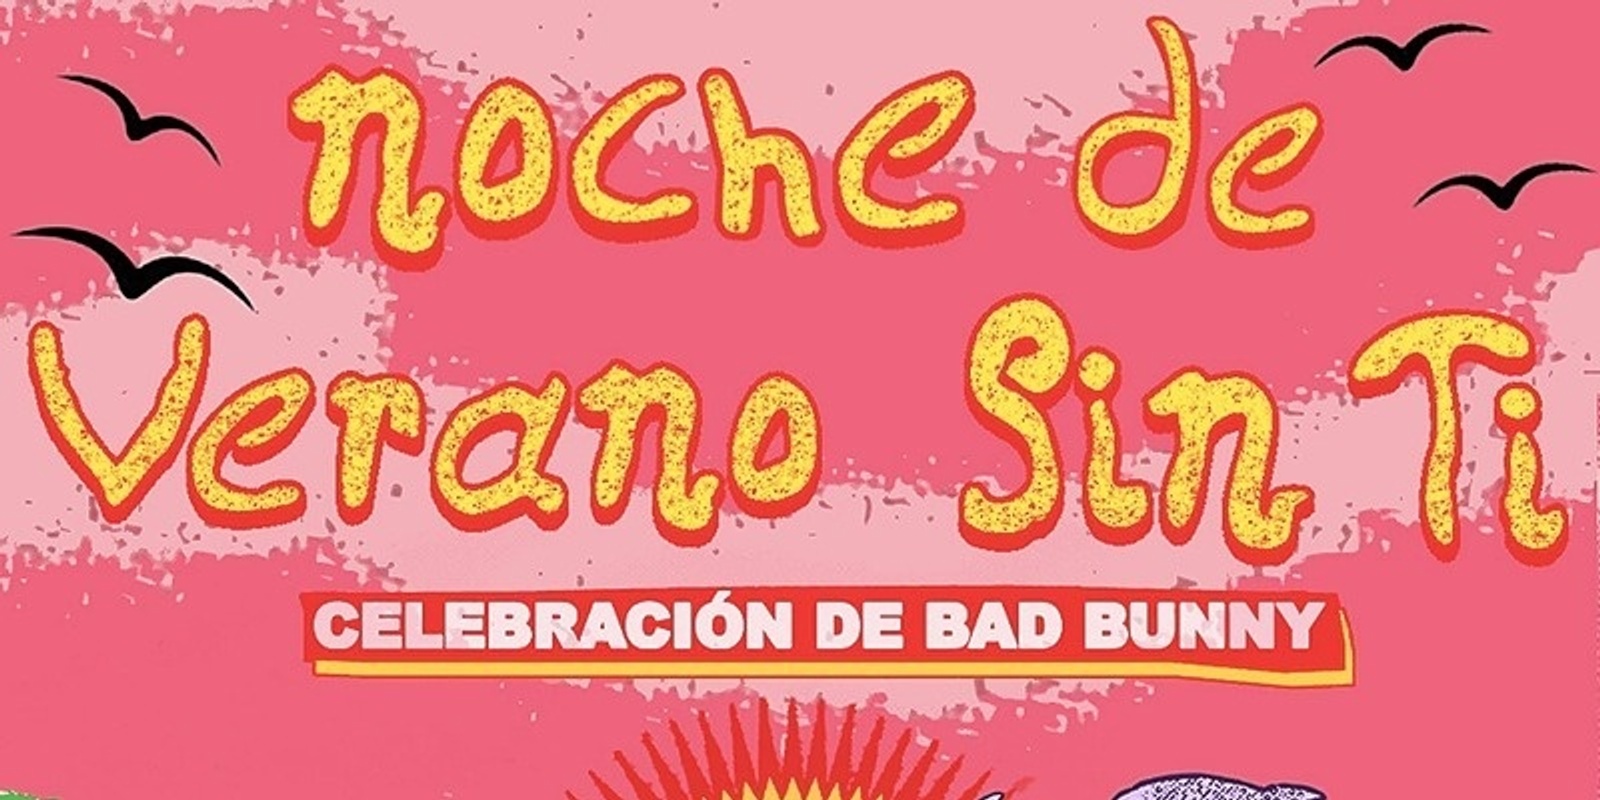 Banner image for NOCHE DE VERANO SIN TI - Celebración de Bad Bunny! - VANCOUVER